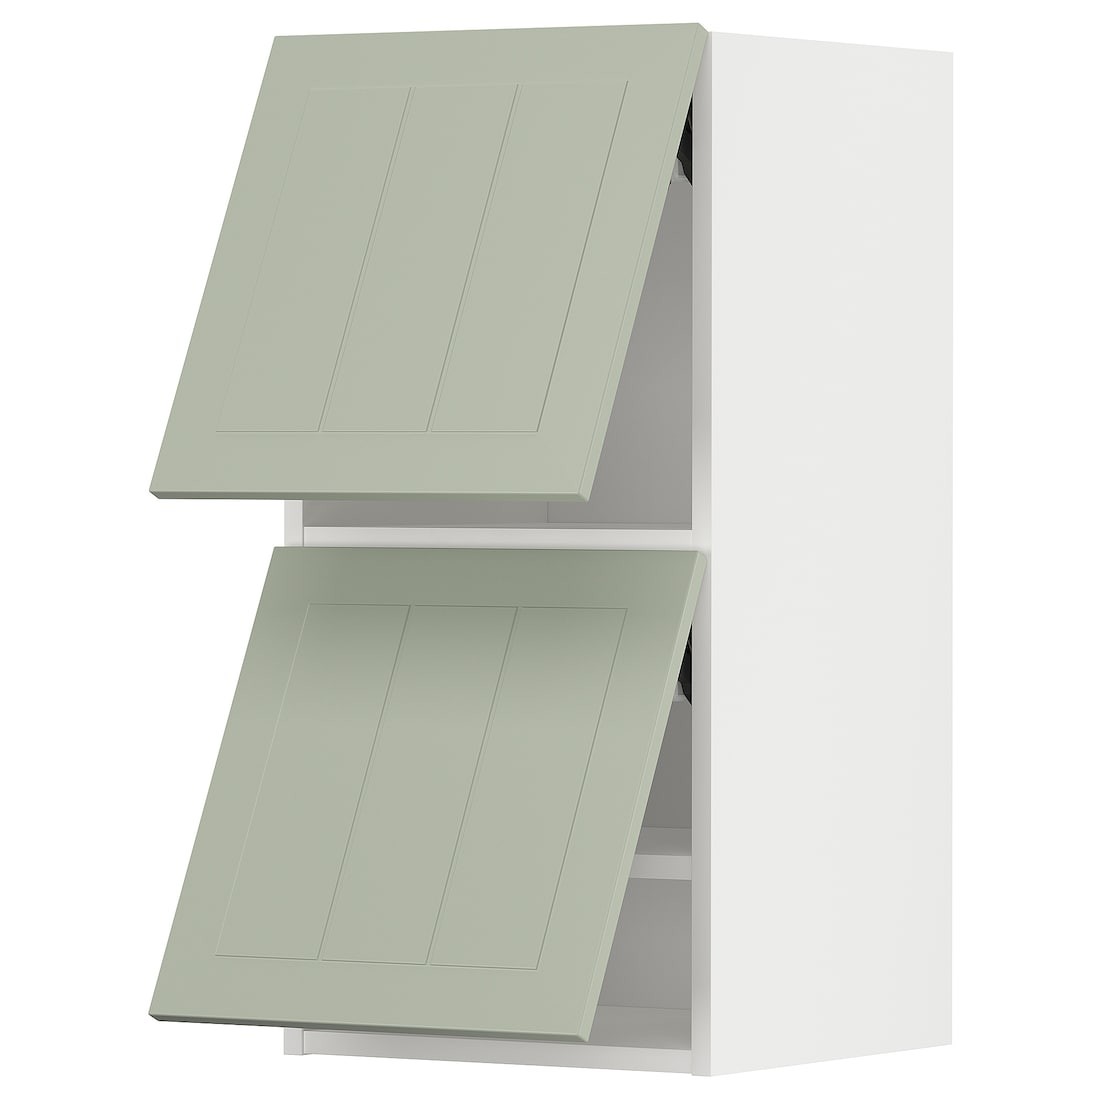 METOD МЕТОД Навесной горизонтальный шкаф / 2 двери, белый / Stensund светло-зеленый, 40x80 см